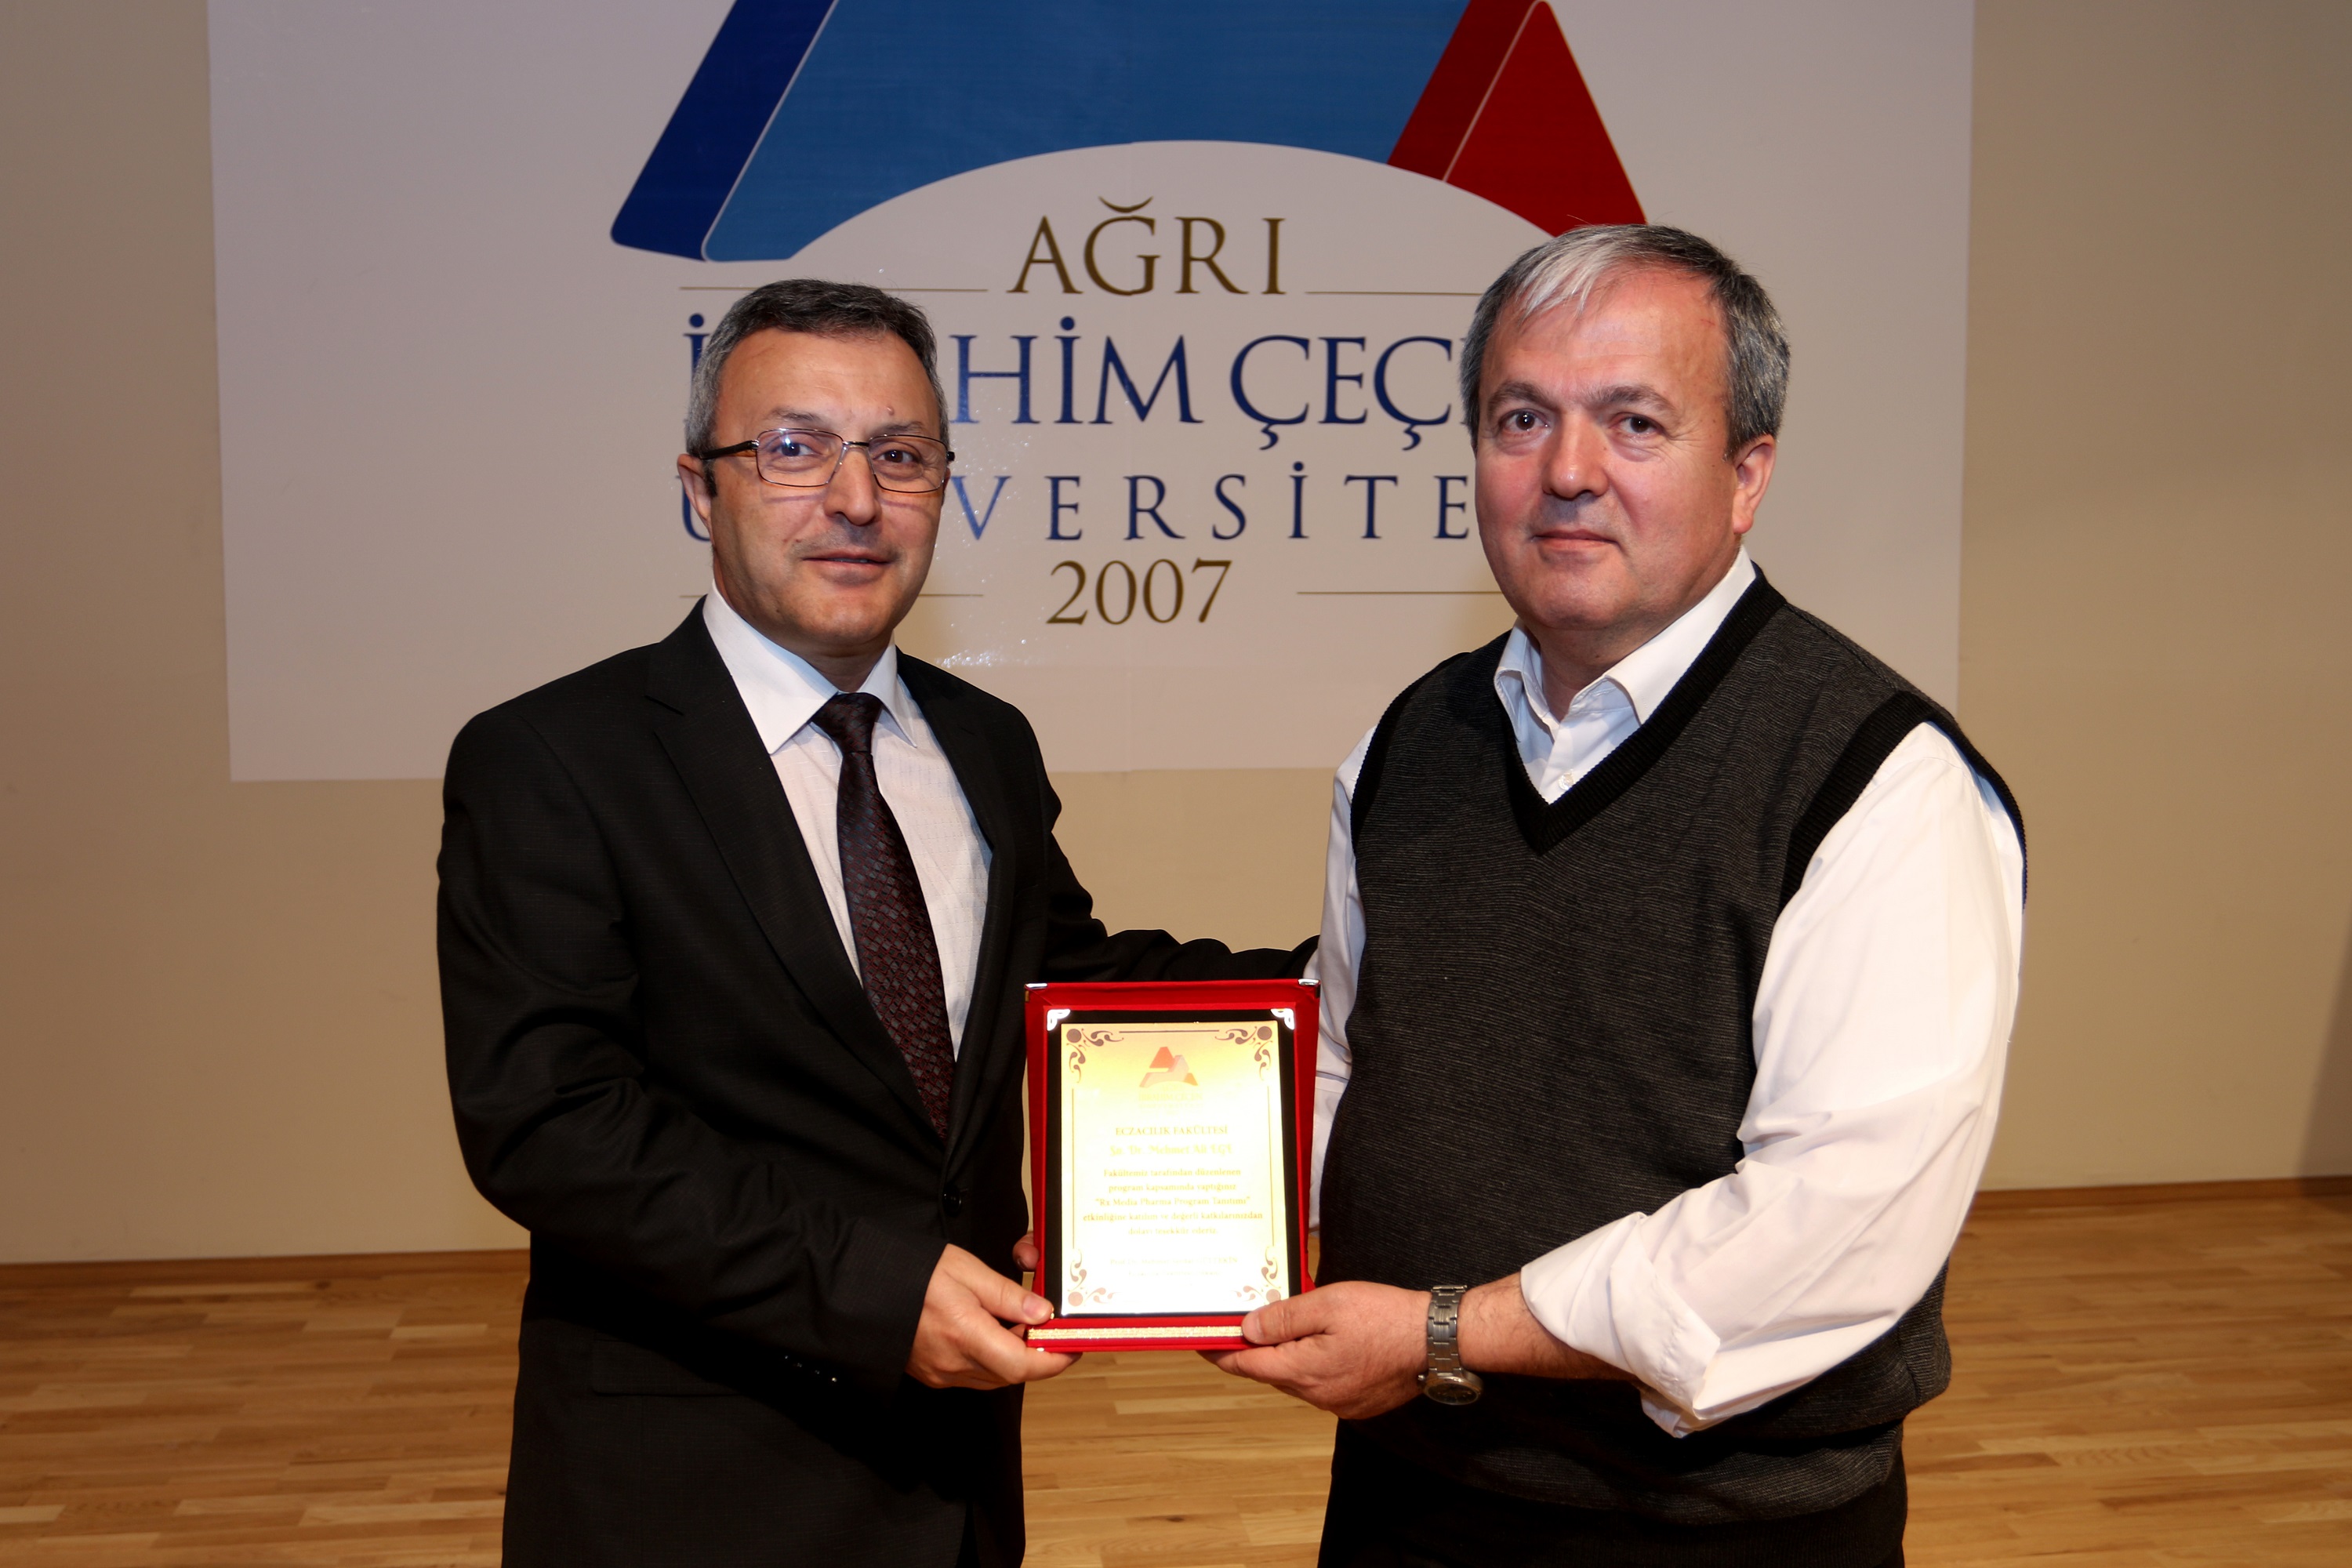 Ağrı İbrahim Çeçen Üniversitesi Arix Media Pharma Programı Hakkında Konferans Düzenlendi